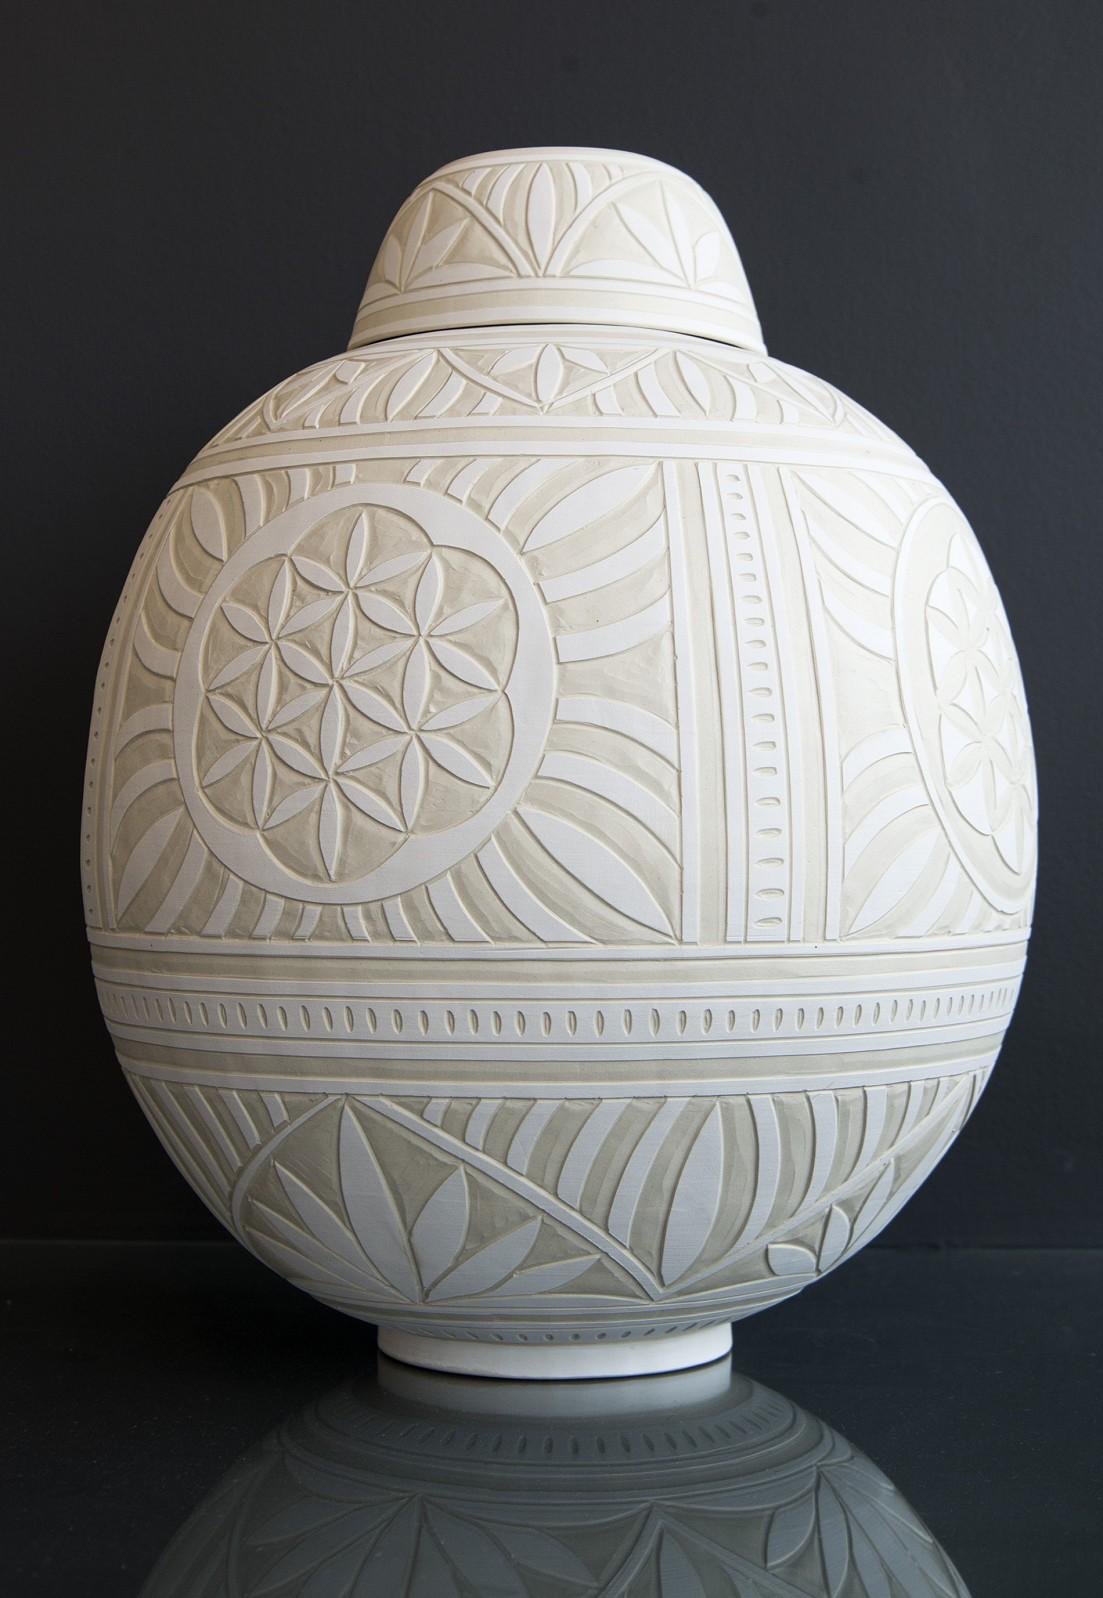 Large Engraved Ginger Jar - decorative, detailed, handcrafted, porcelain vessel - Sculpture by Loren Kaplan